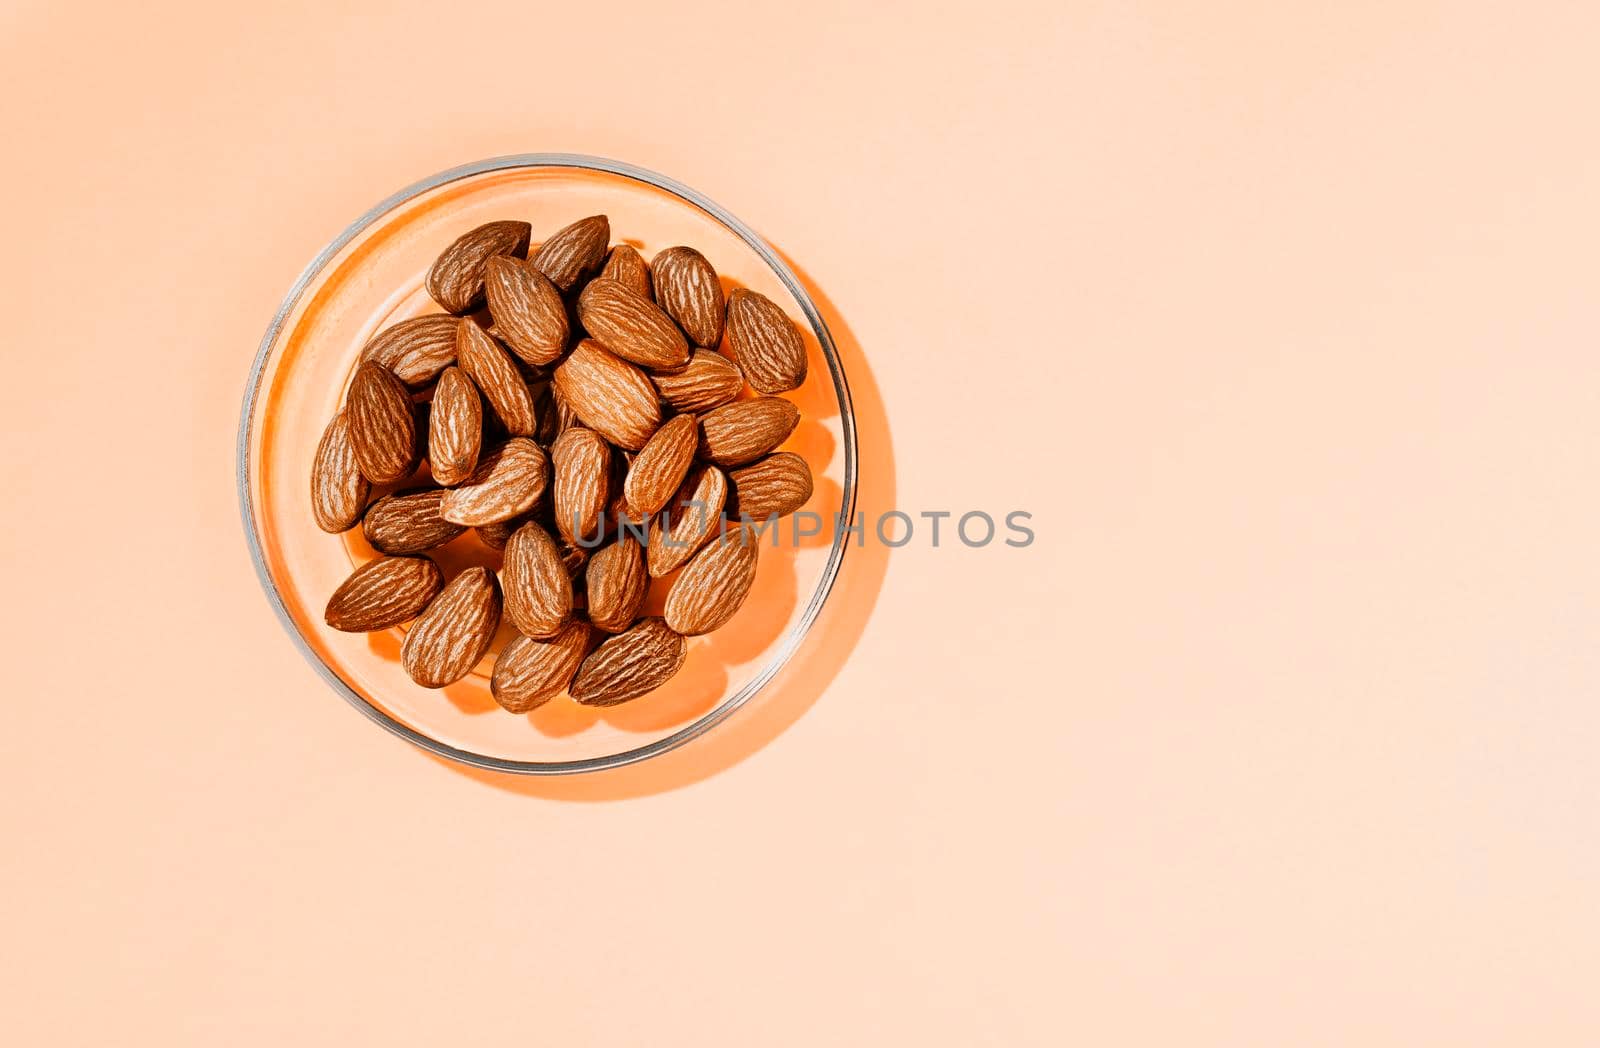 Almonds on plate studio shot by victimewalker